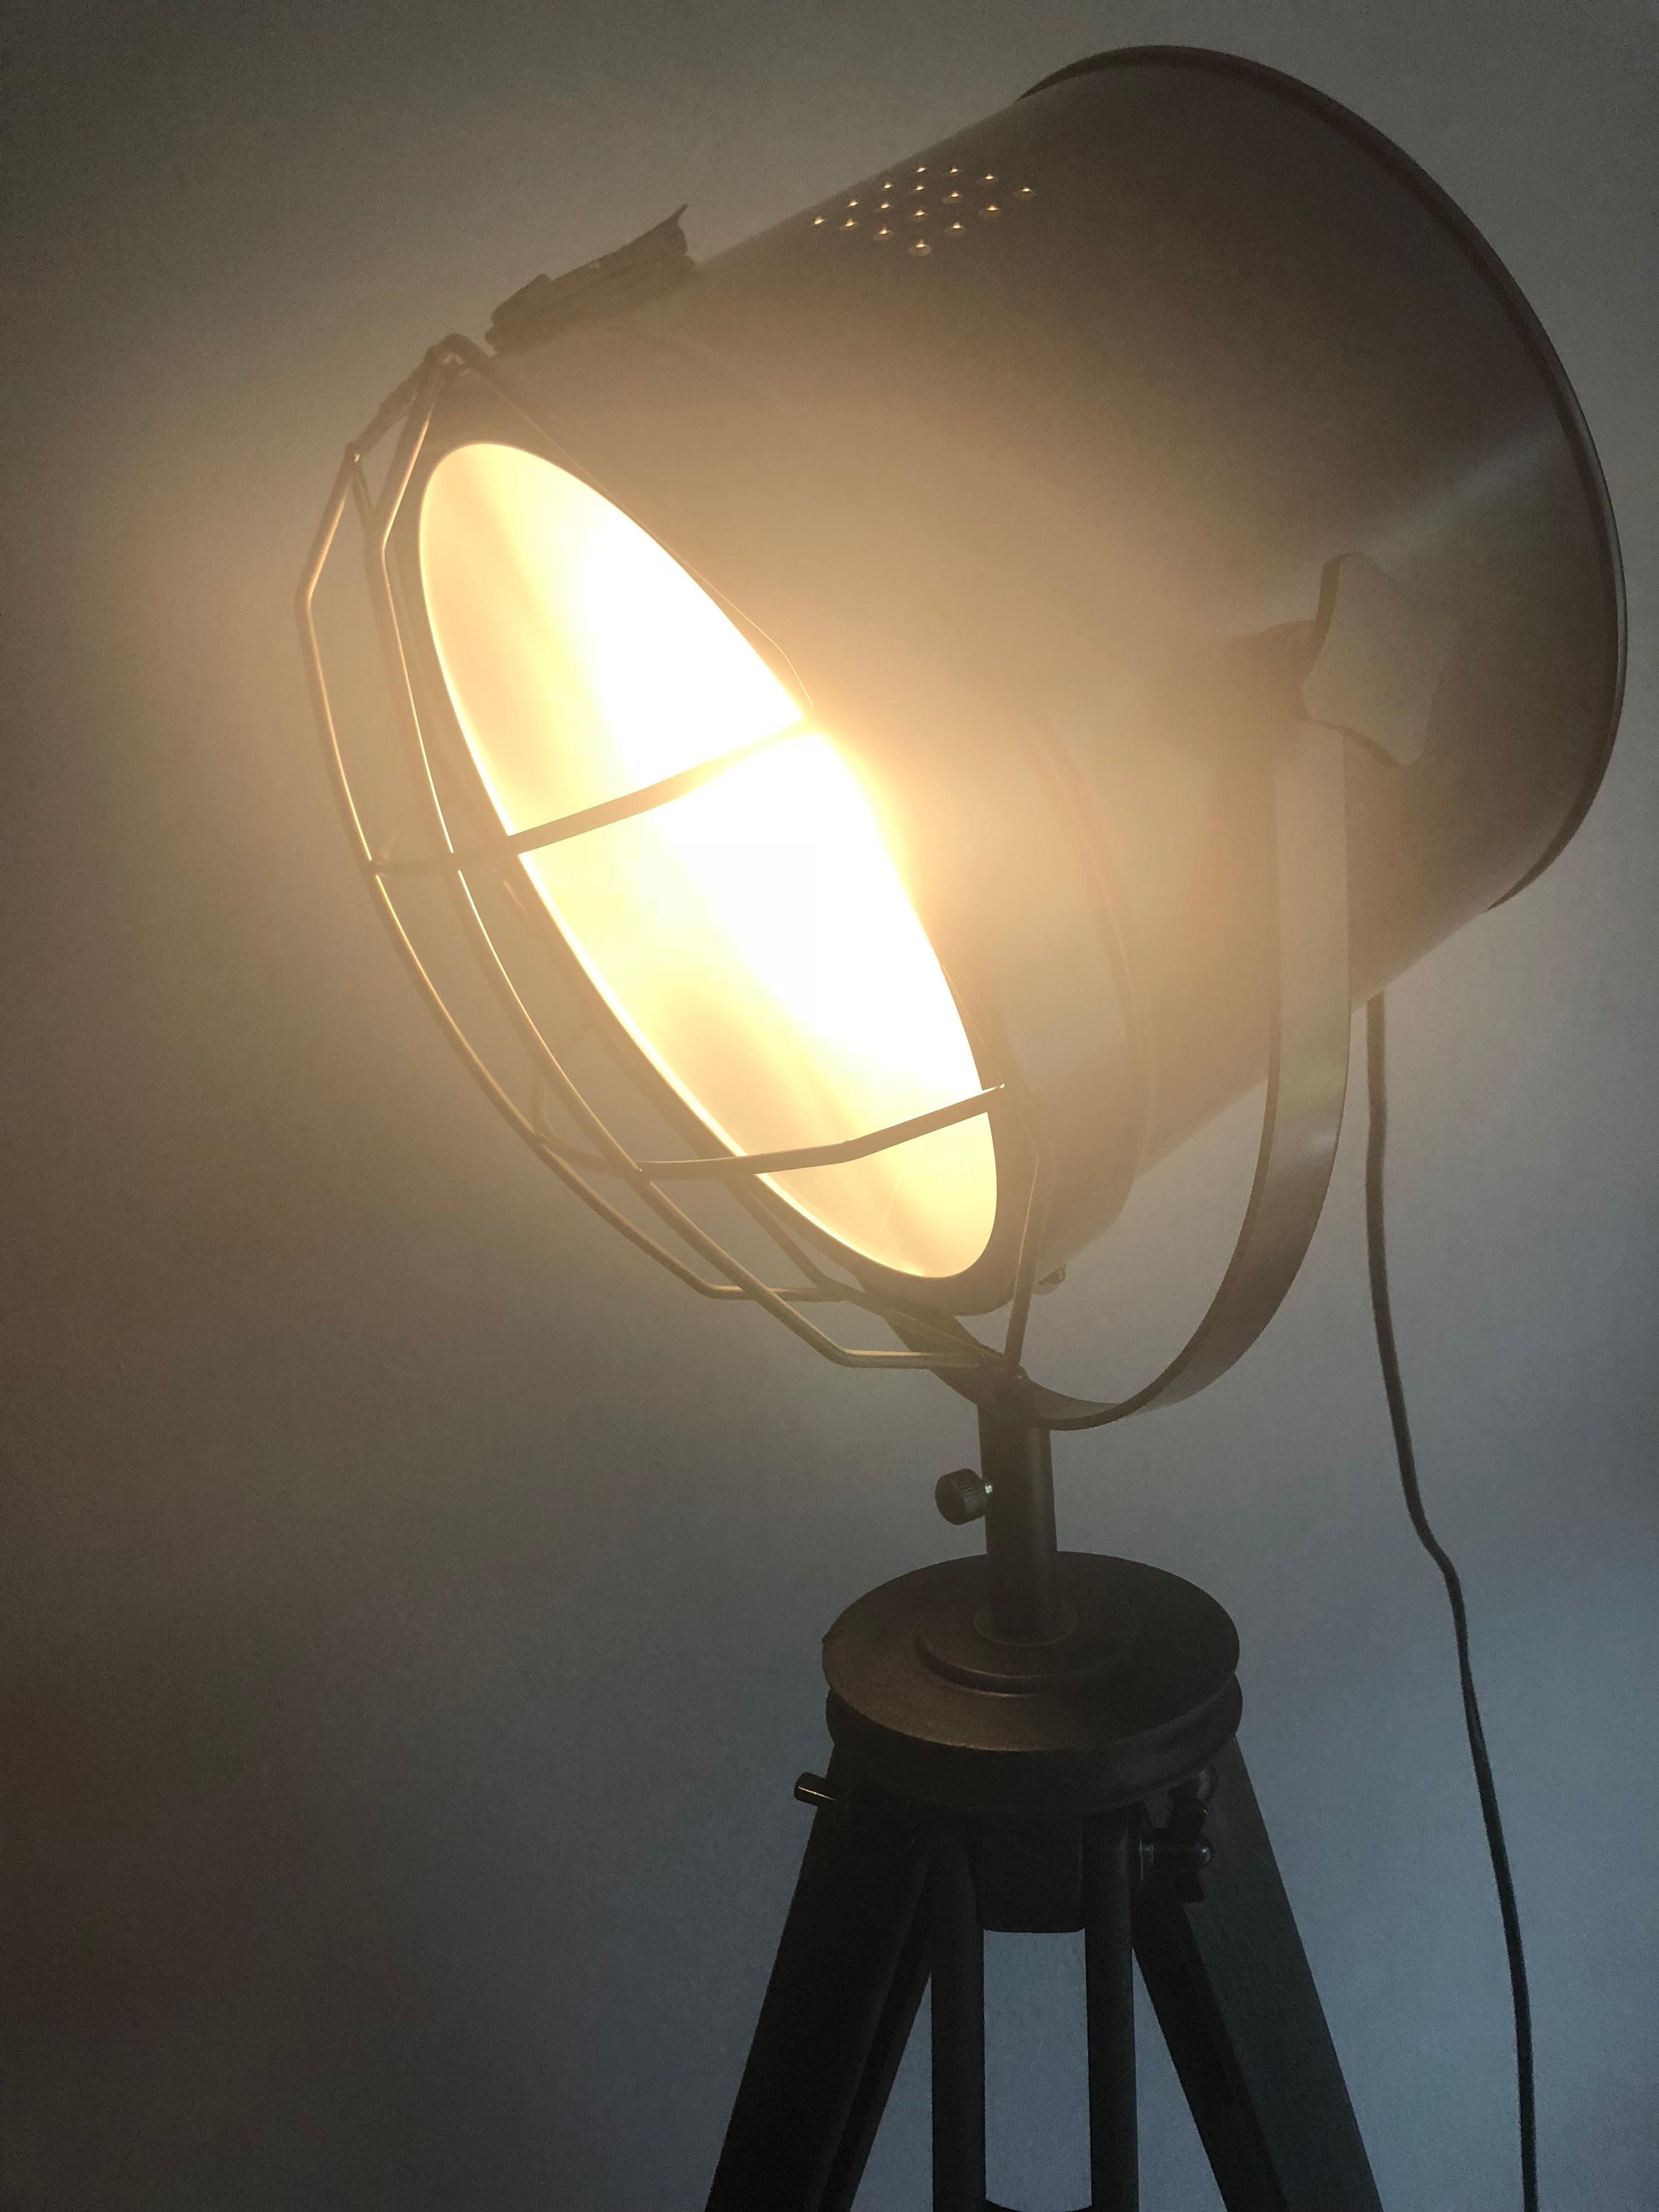 Waren am Donnerstag zum ersten Mal bei Kwantum in Venlo und haben diese tolle Lampe gefunden :)